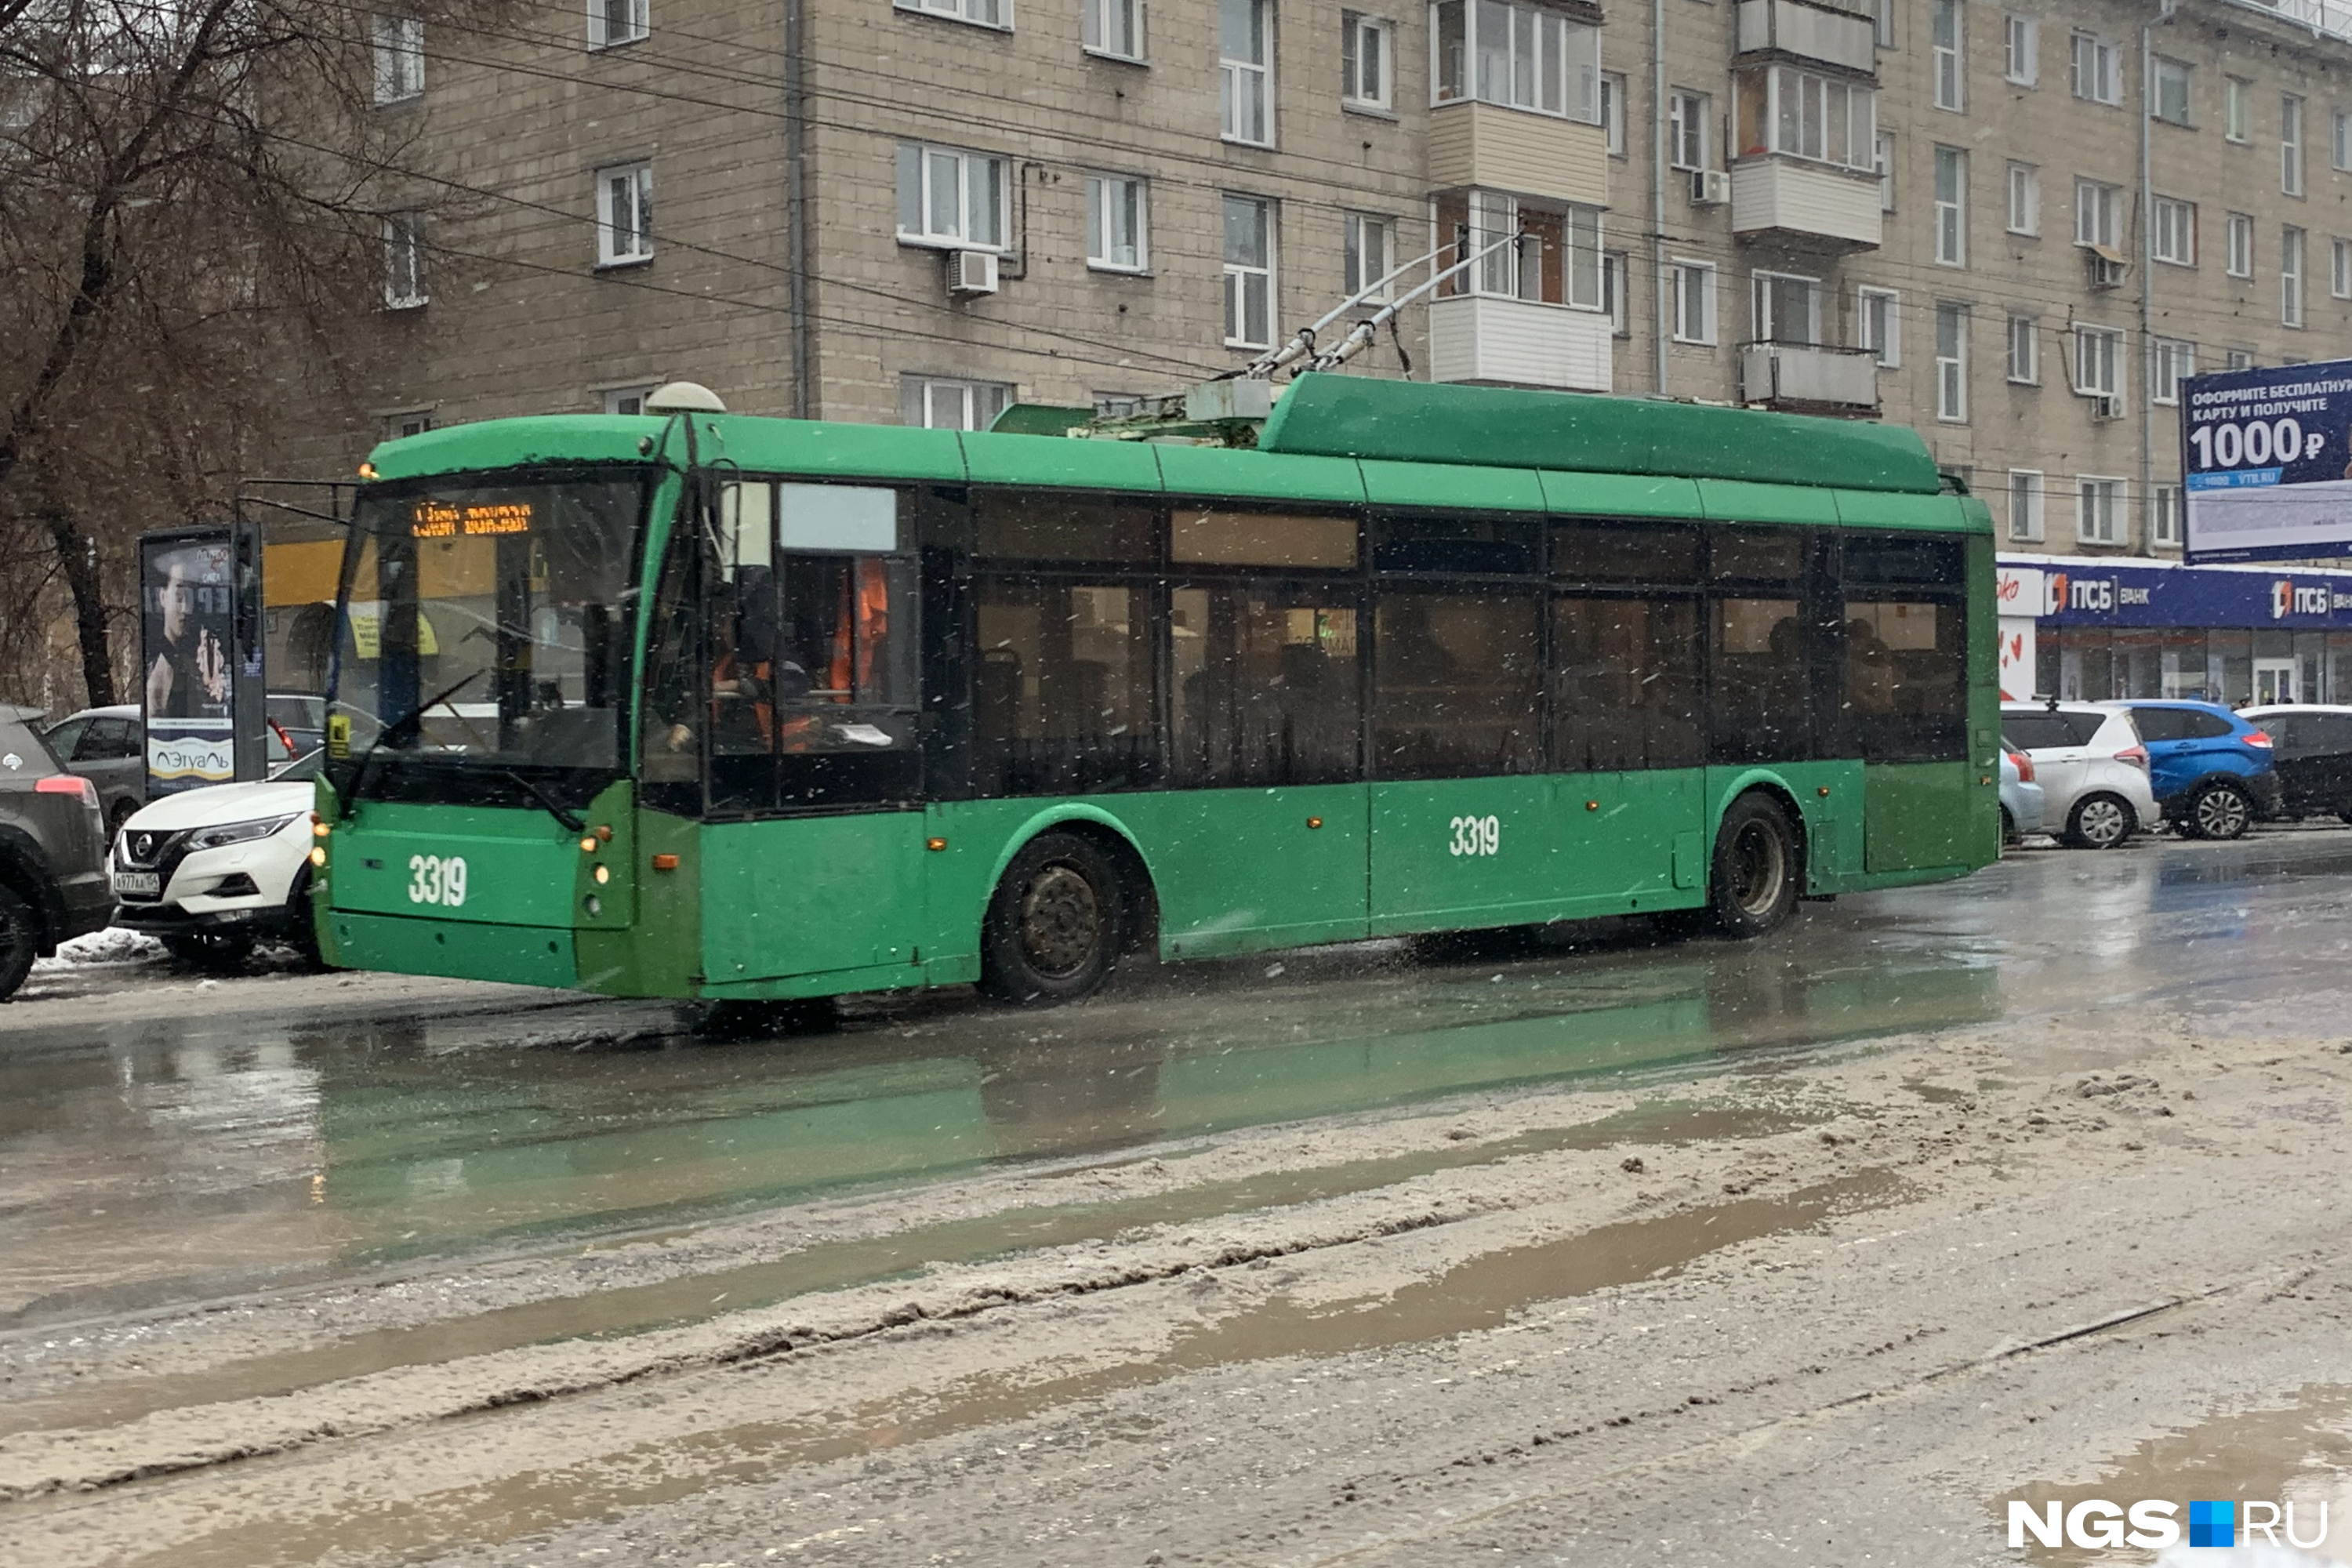 Журналист НГС поездил на троллейбусах Новосибирска — что он увидел  страшного, а что понравилось, общественный транспорт - 15 ноября 2021 - НГС